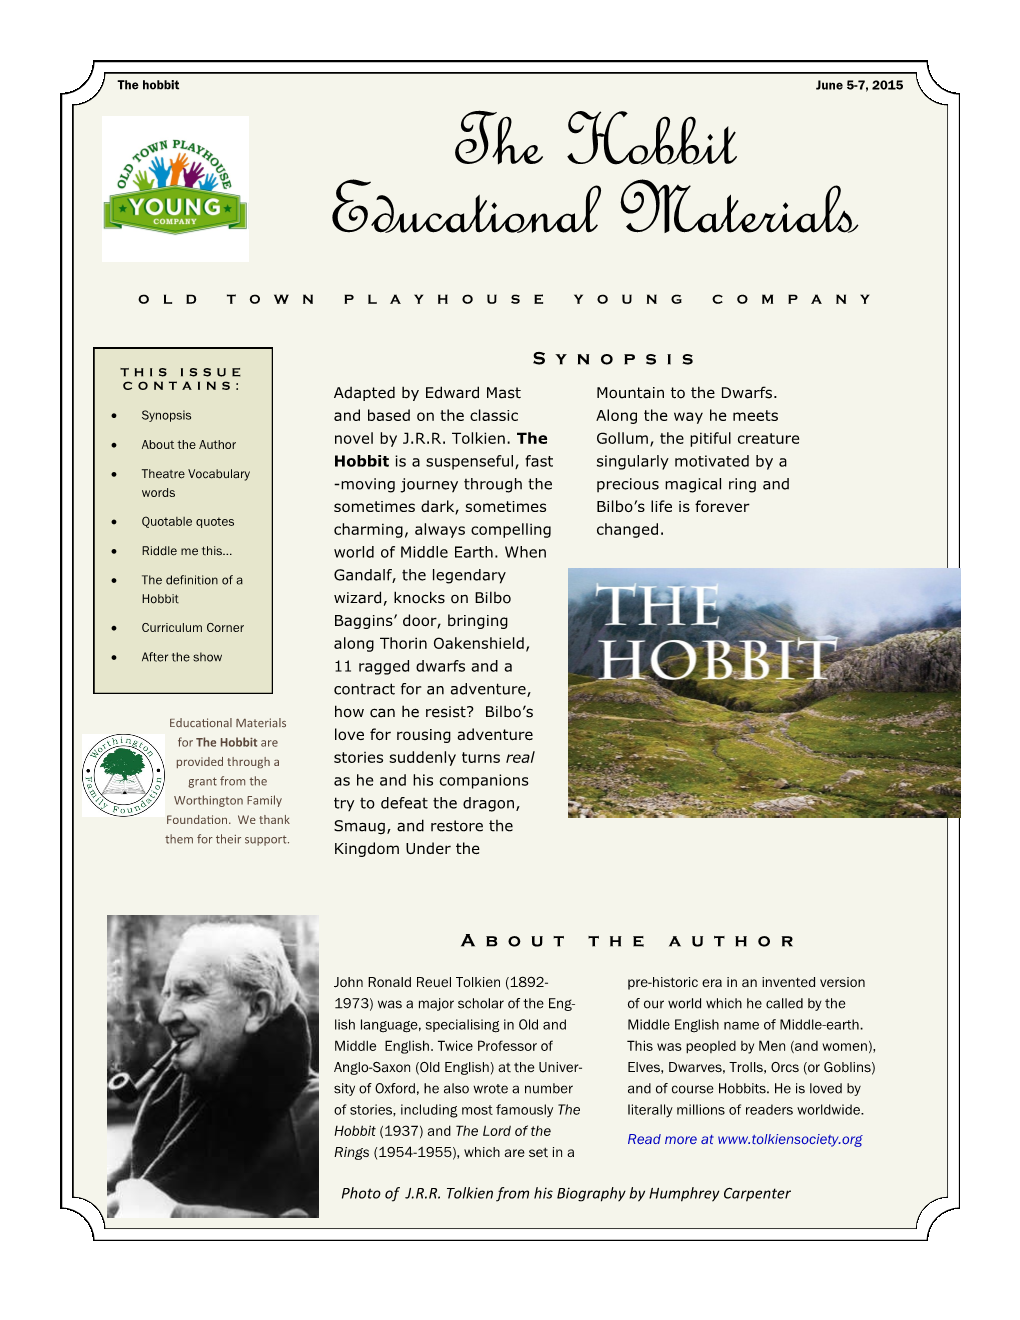 Hobbit June 5-7, 2015 the Hobbit Educational Materials